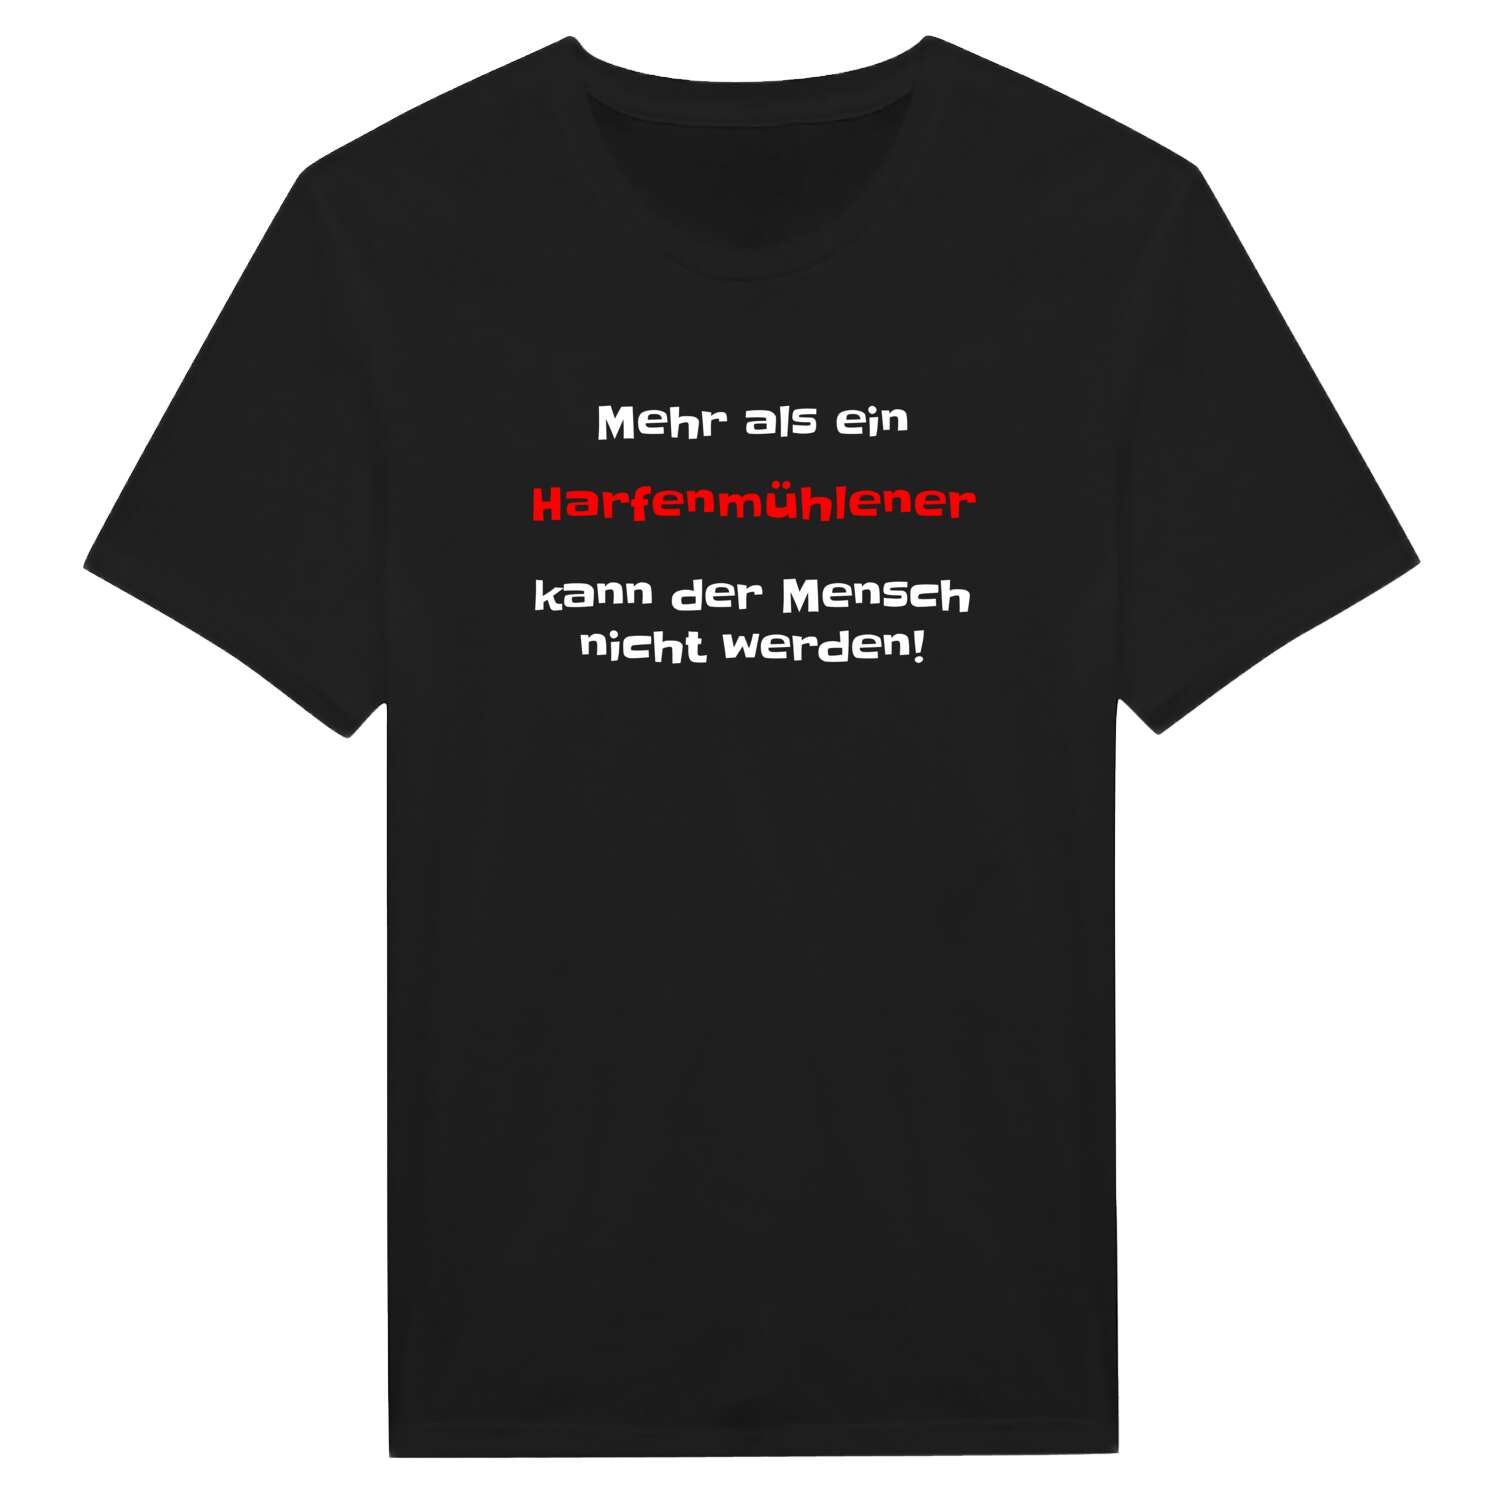 Harfenmühle T-Shirt »Mehr als ein«